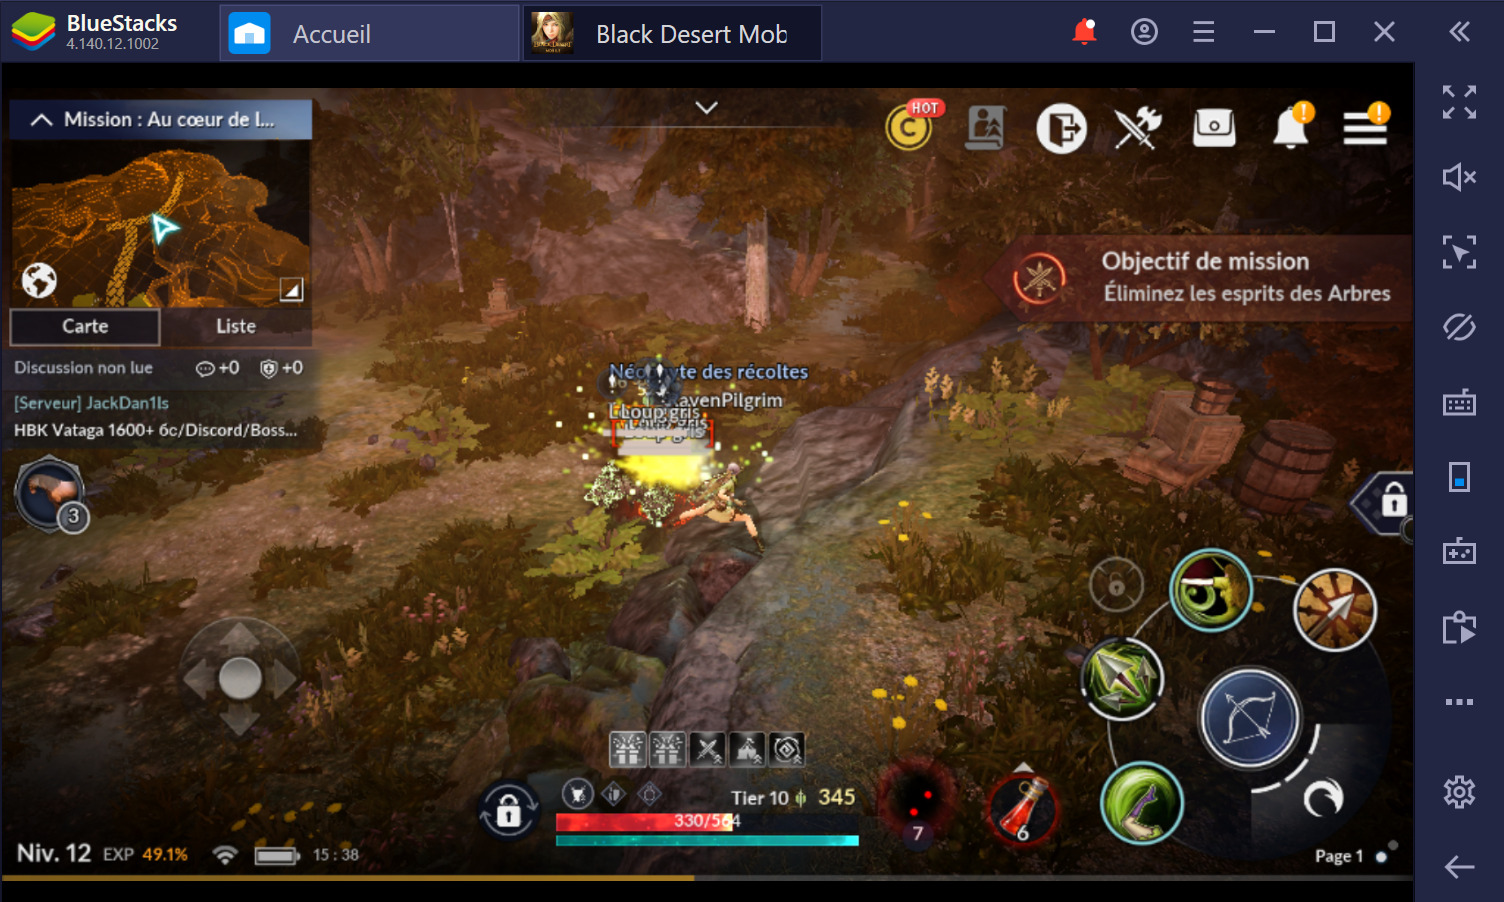 Black Desert Mobile sur PC : Guide des combats pour débutants